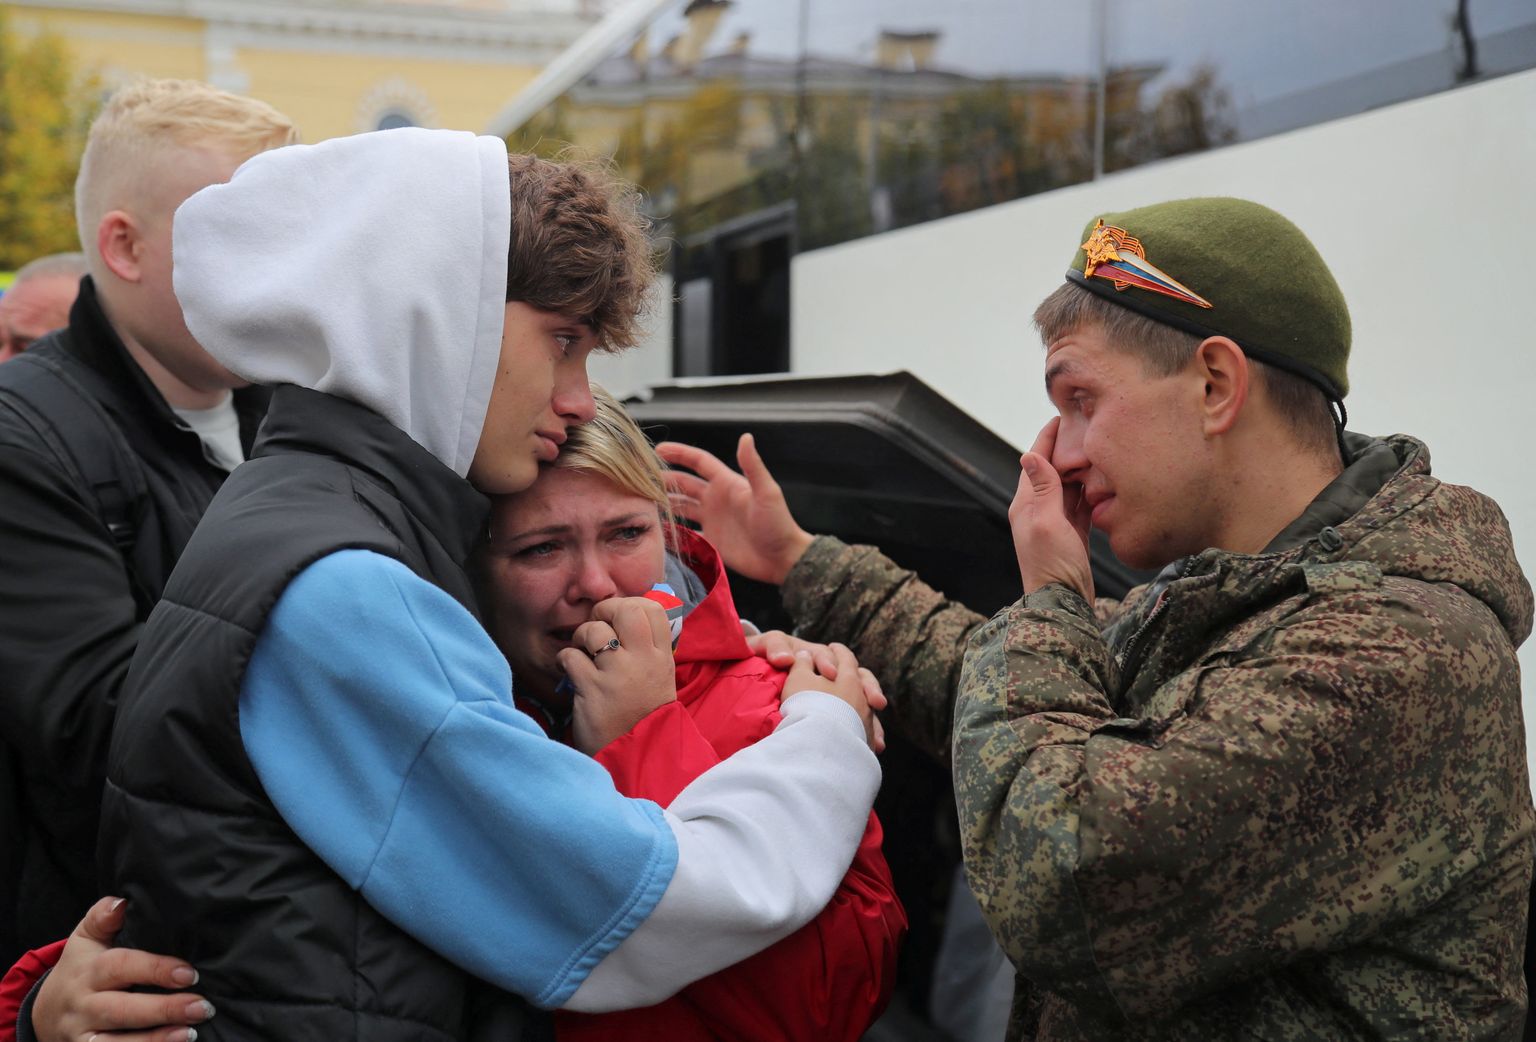 Vene perekond saatmas ära reservväelast, kes sai mobilisatsioonikutse. Foto on tehtud 1. oktoobril 2022 Leningradi oblastis Gatšinas